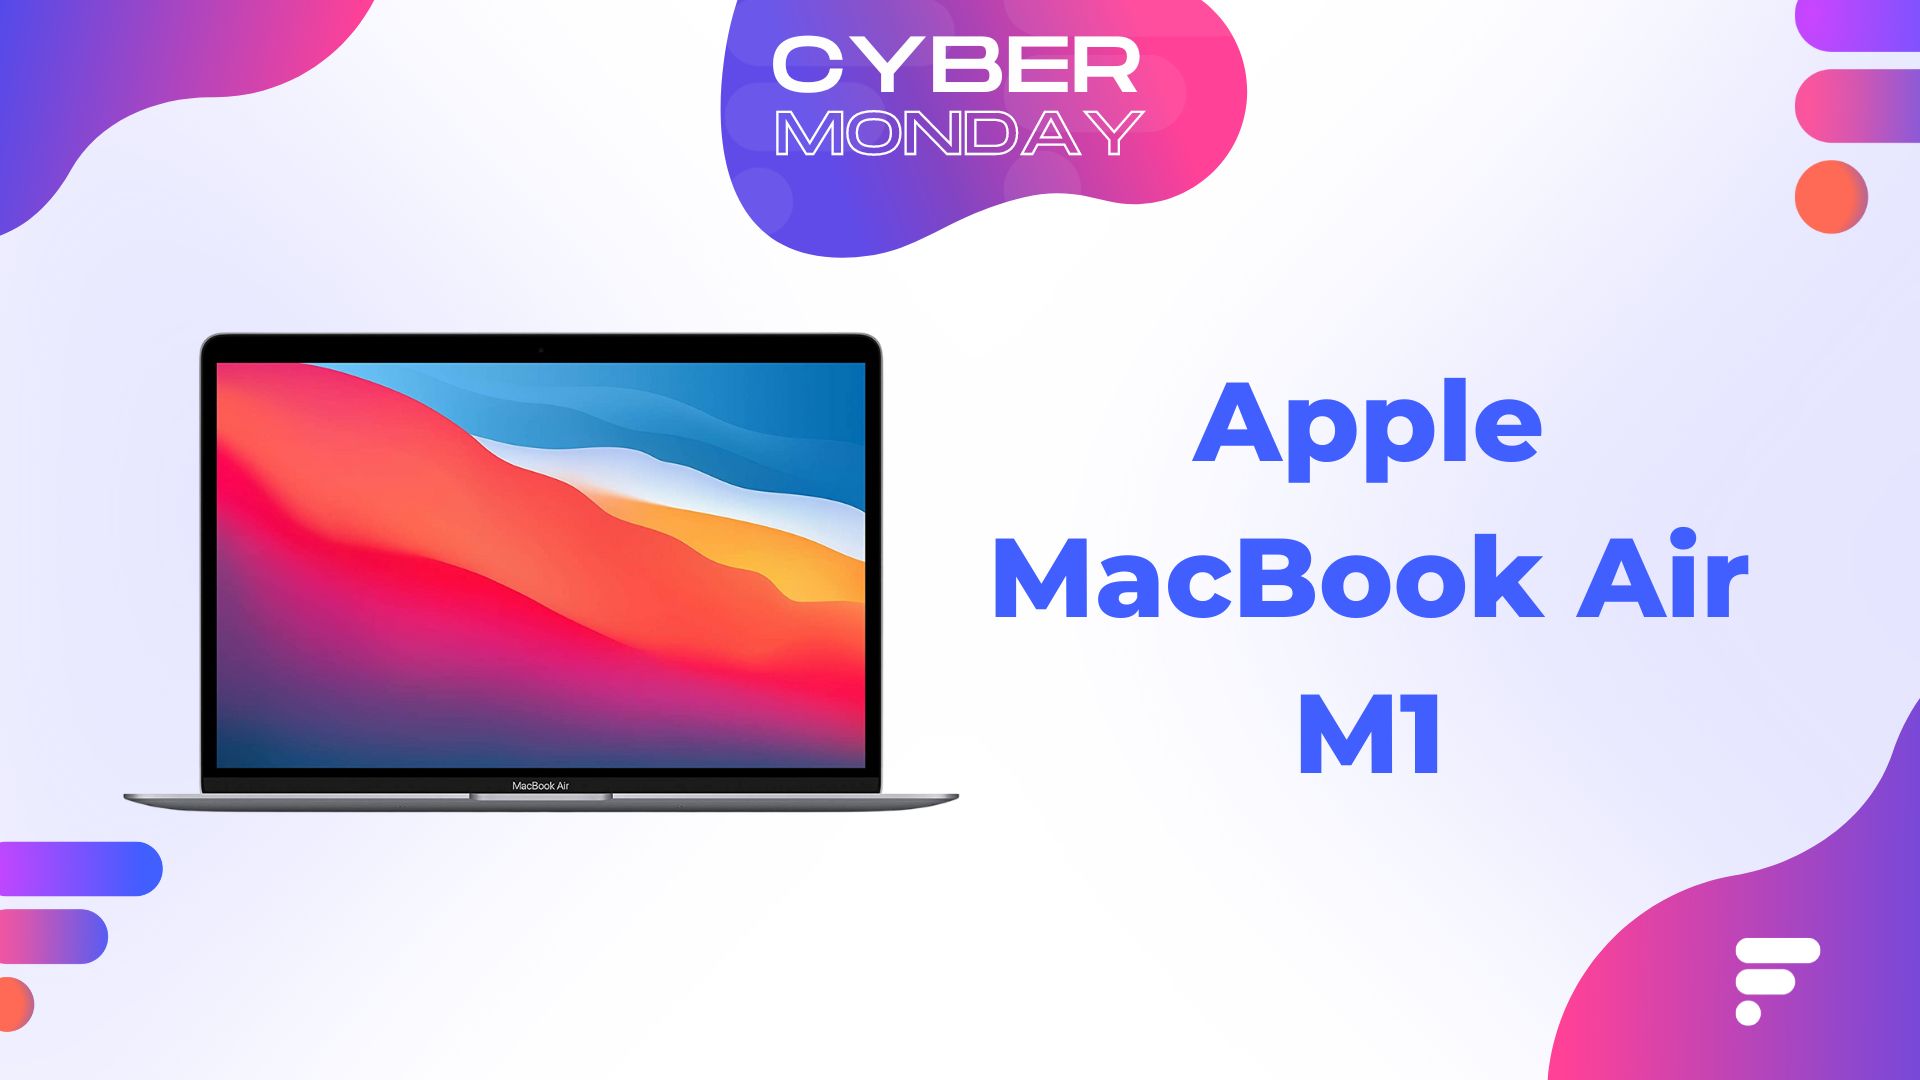 Le MacBook Air M1 d'Apple baisse encore plus son prix pour le Cyber Monday